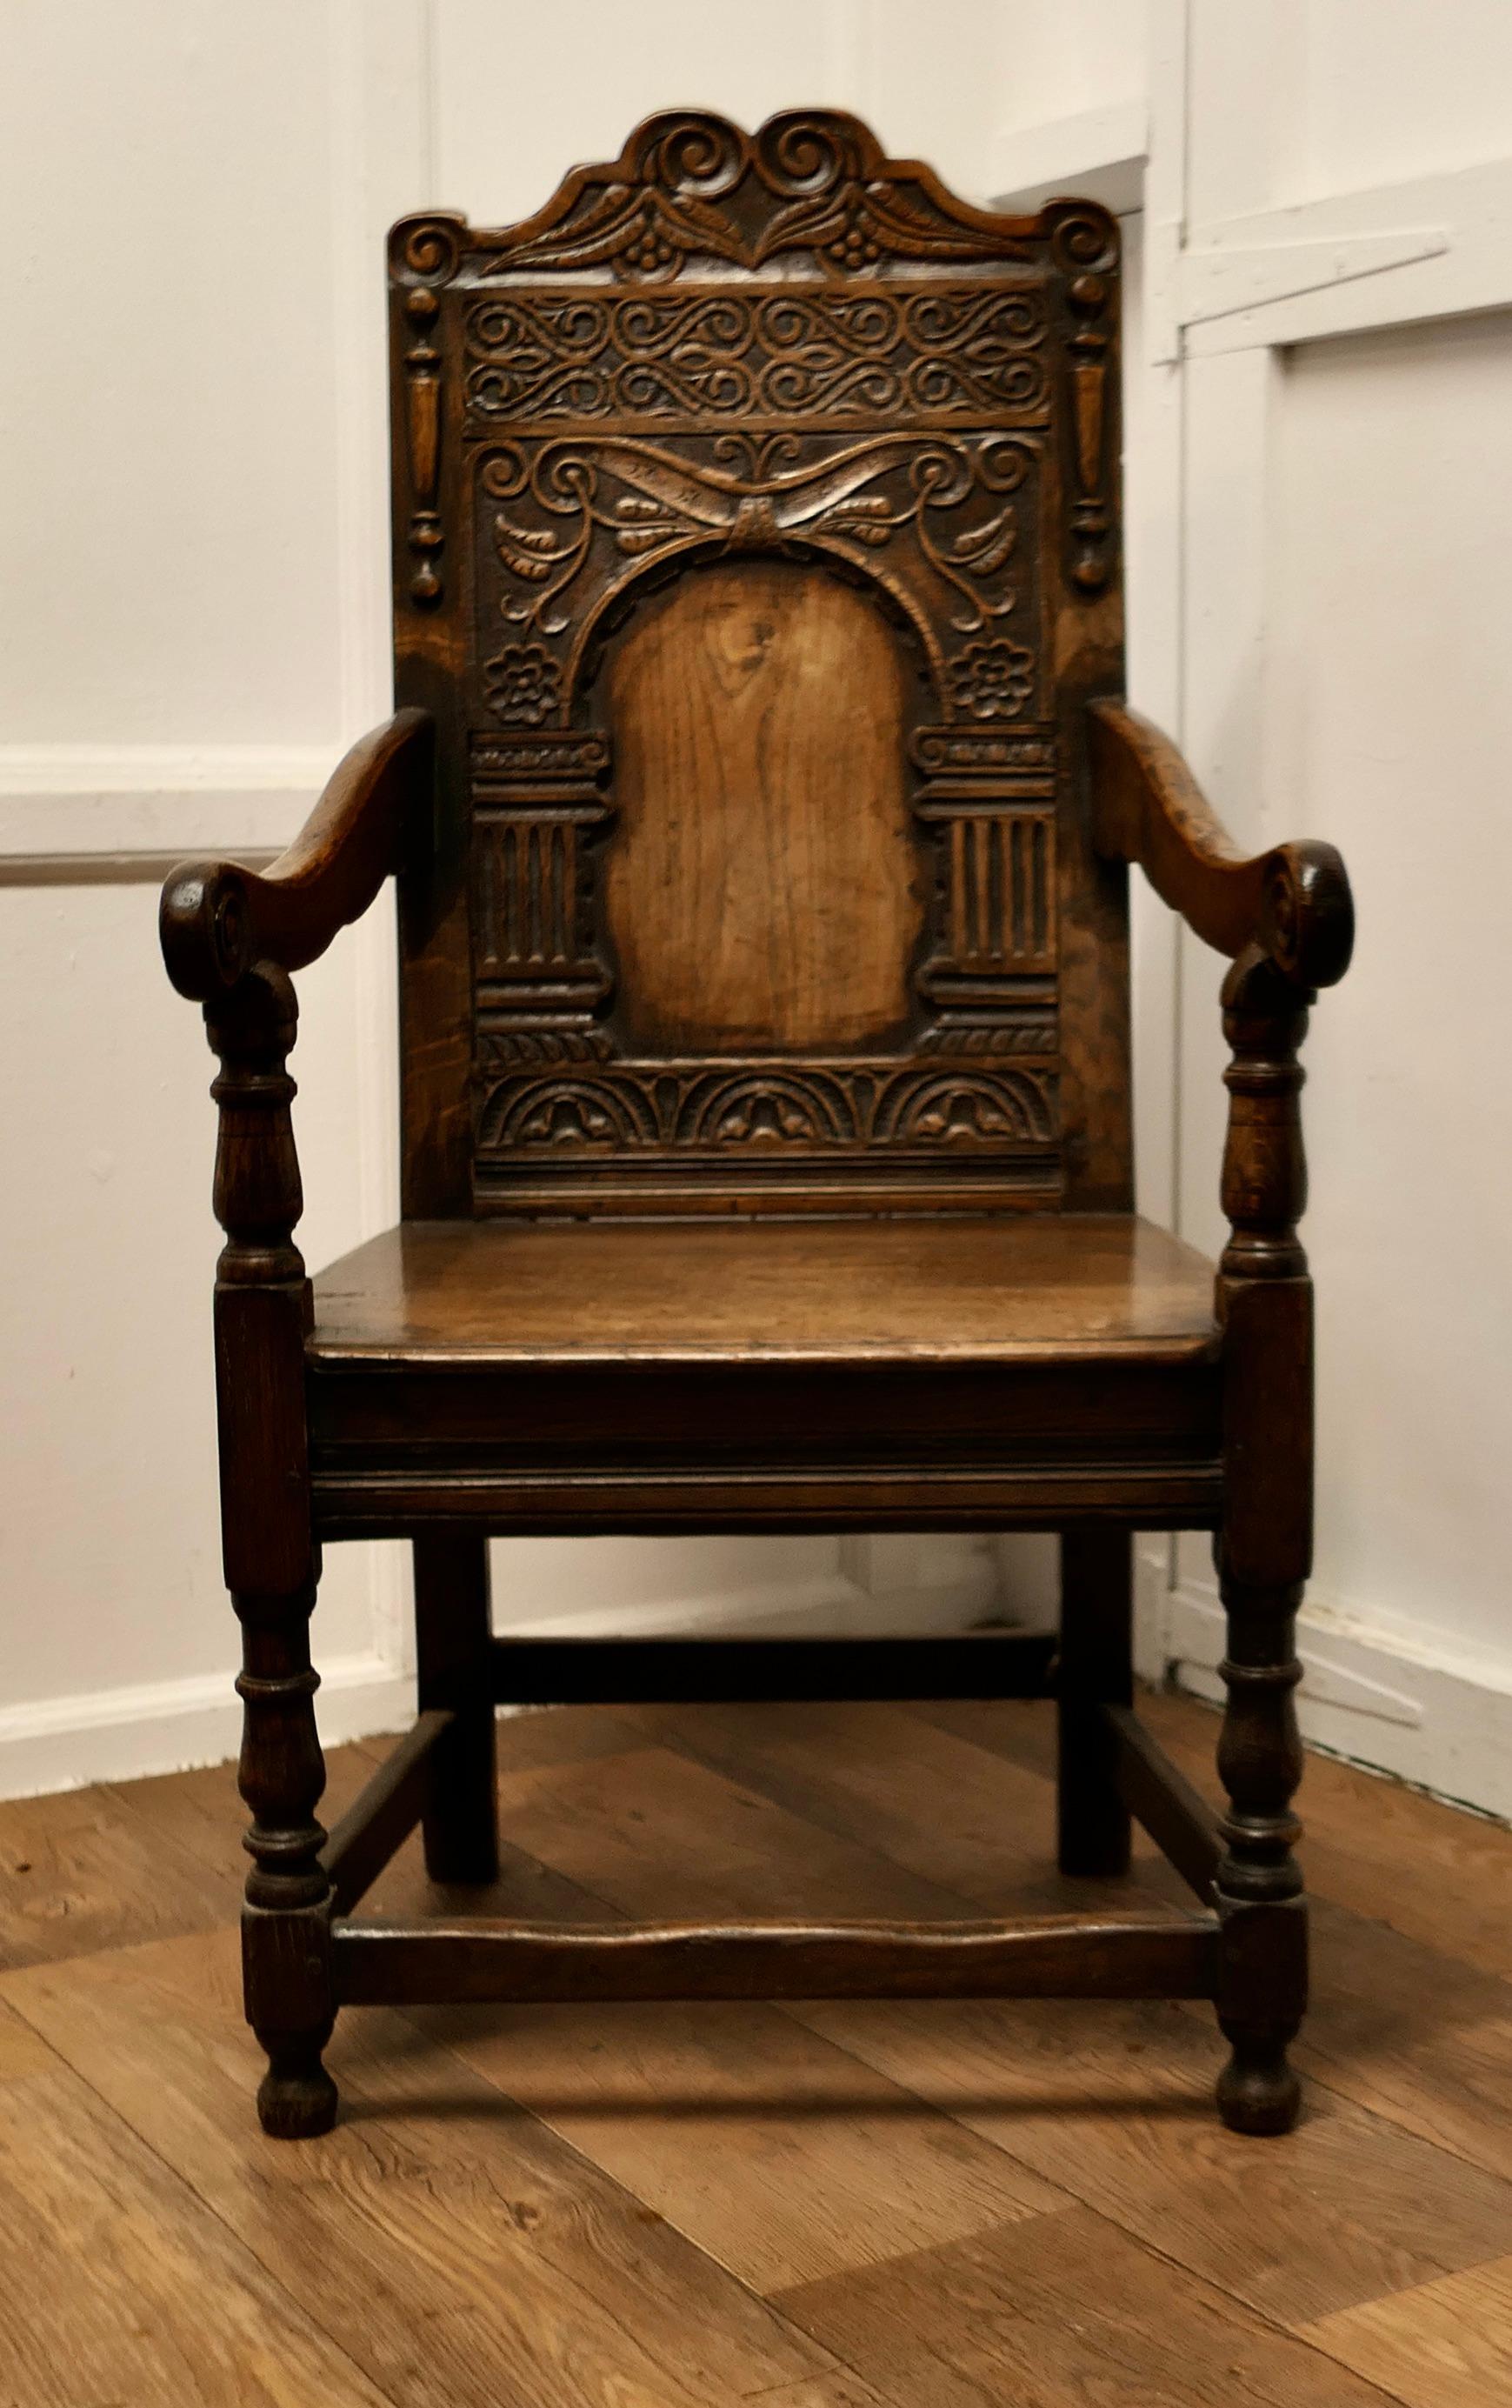 Chaise à lambris celtique en chêne sculpté du XVIIIe siècle

Cette belle chaise a une magnifique patine. Elle a une assise en planches massives, des pieds tournés et des accoudoirs sculptés. Le haut dossier décoratif du trône est profondément